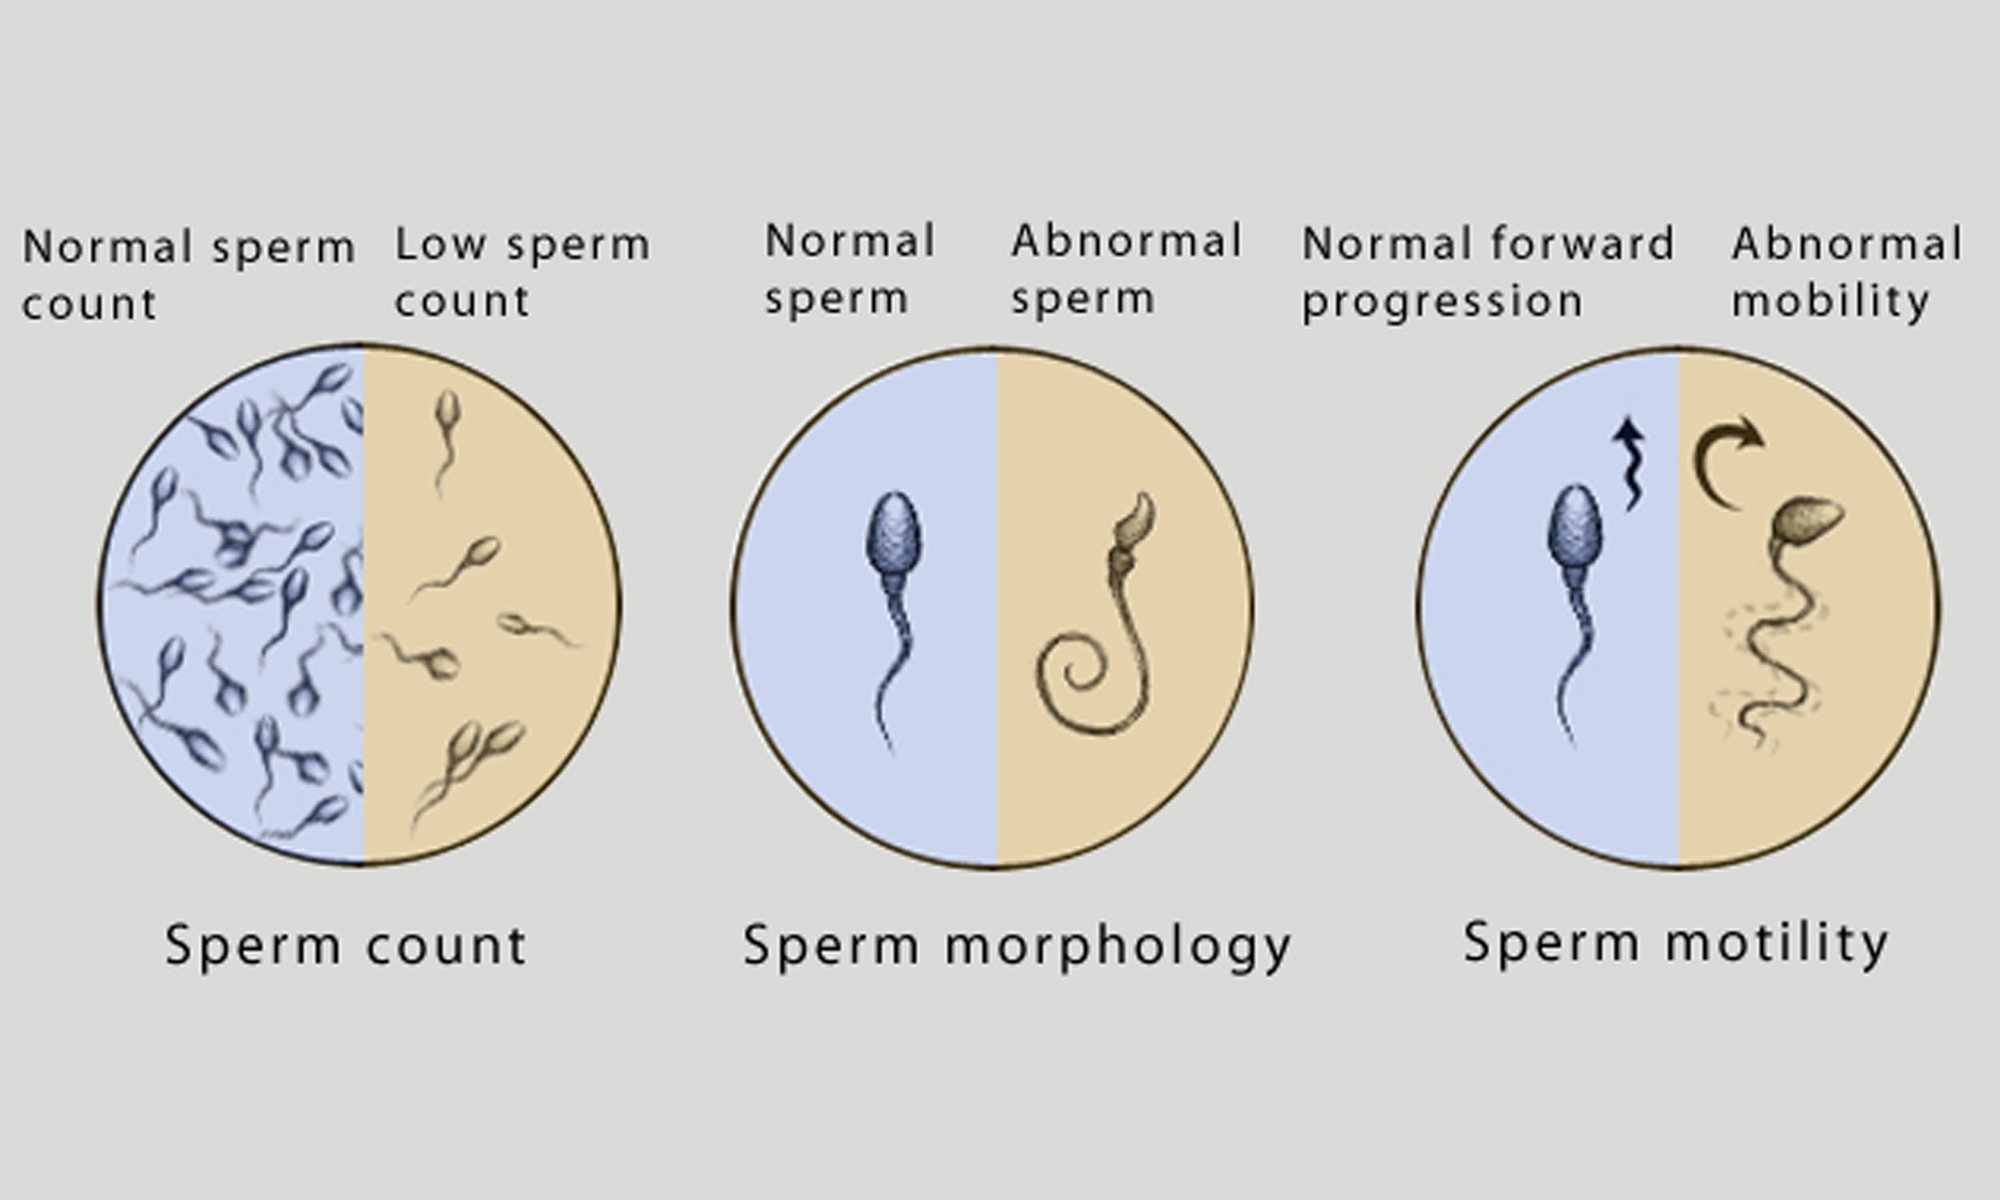 как можно улучшить морфологию спермы фото 95